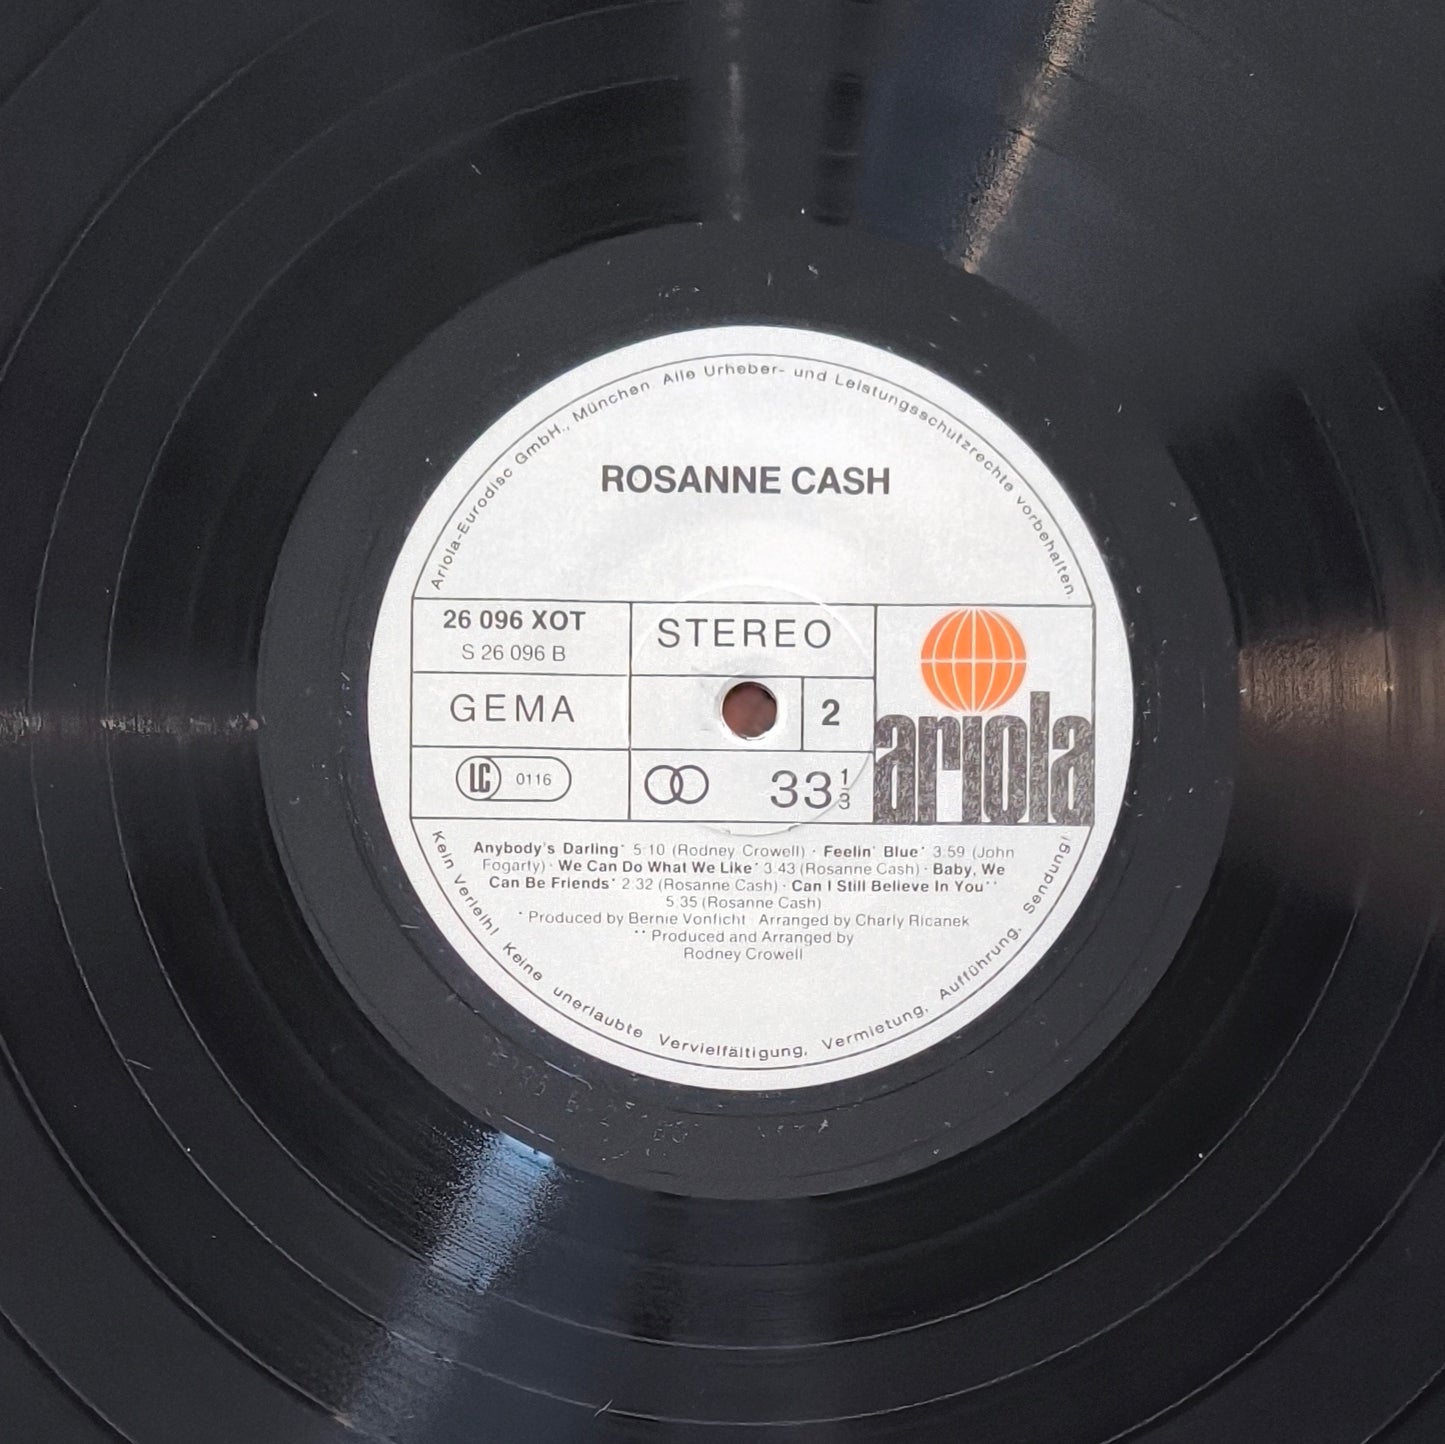 ROSANNE CASH - Rosanne Cash